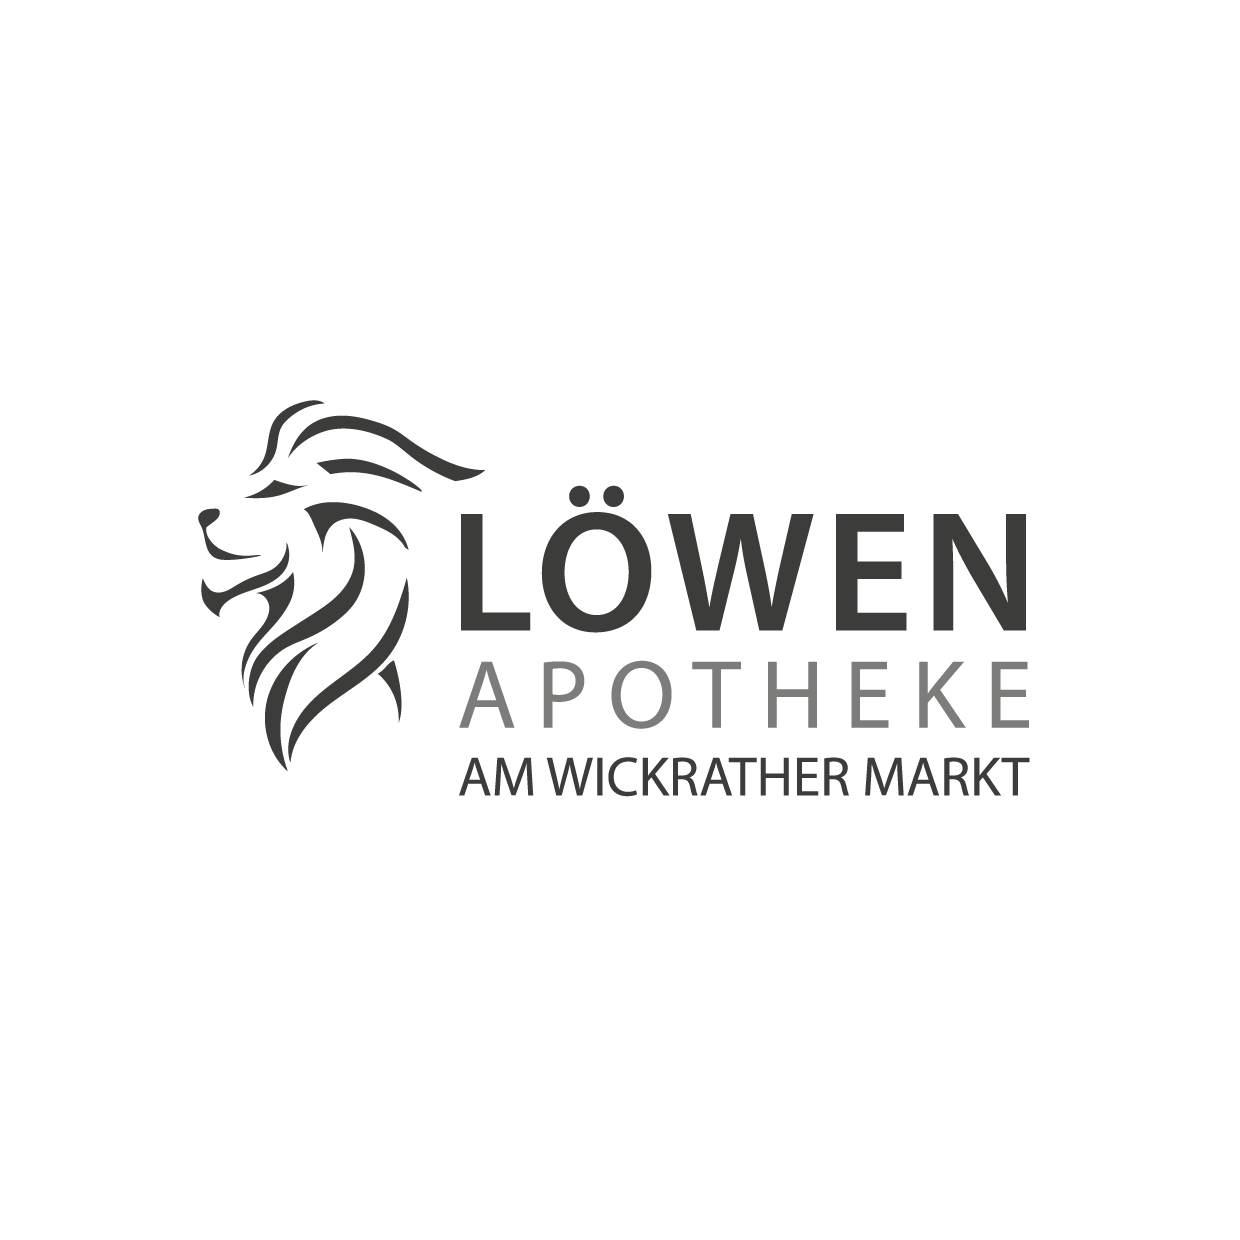 Löwen-Apotheke Wickrath am Markt Logo